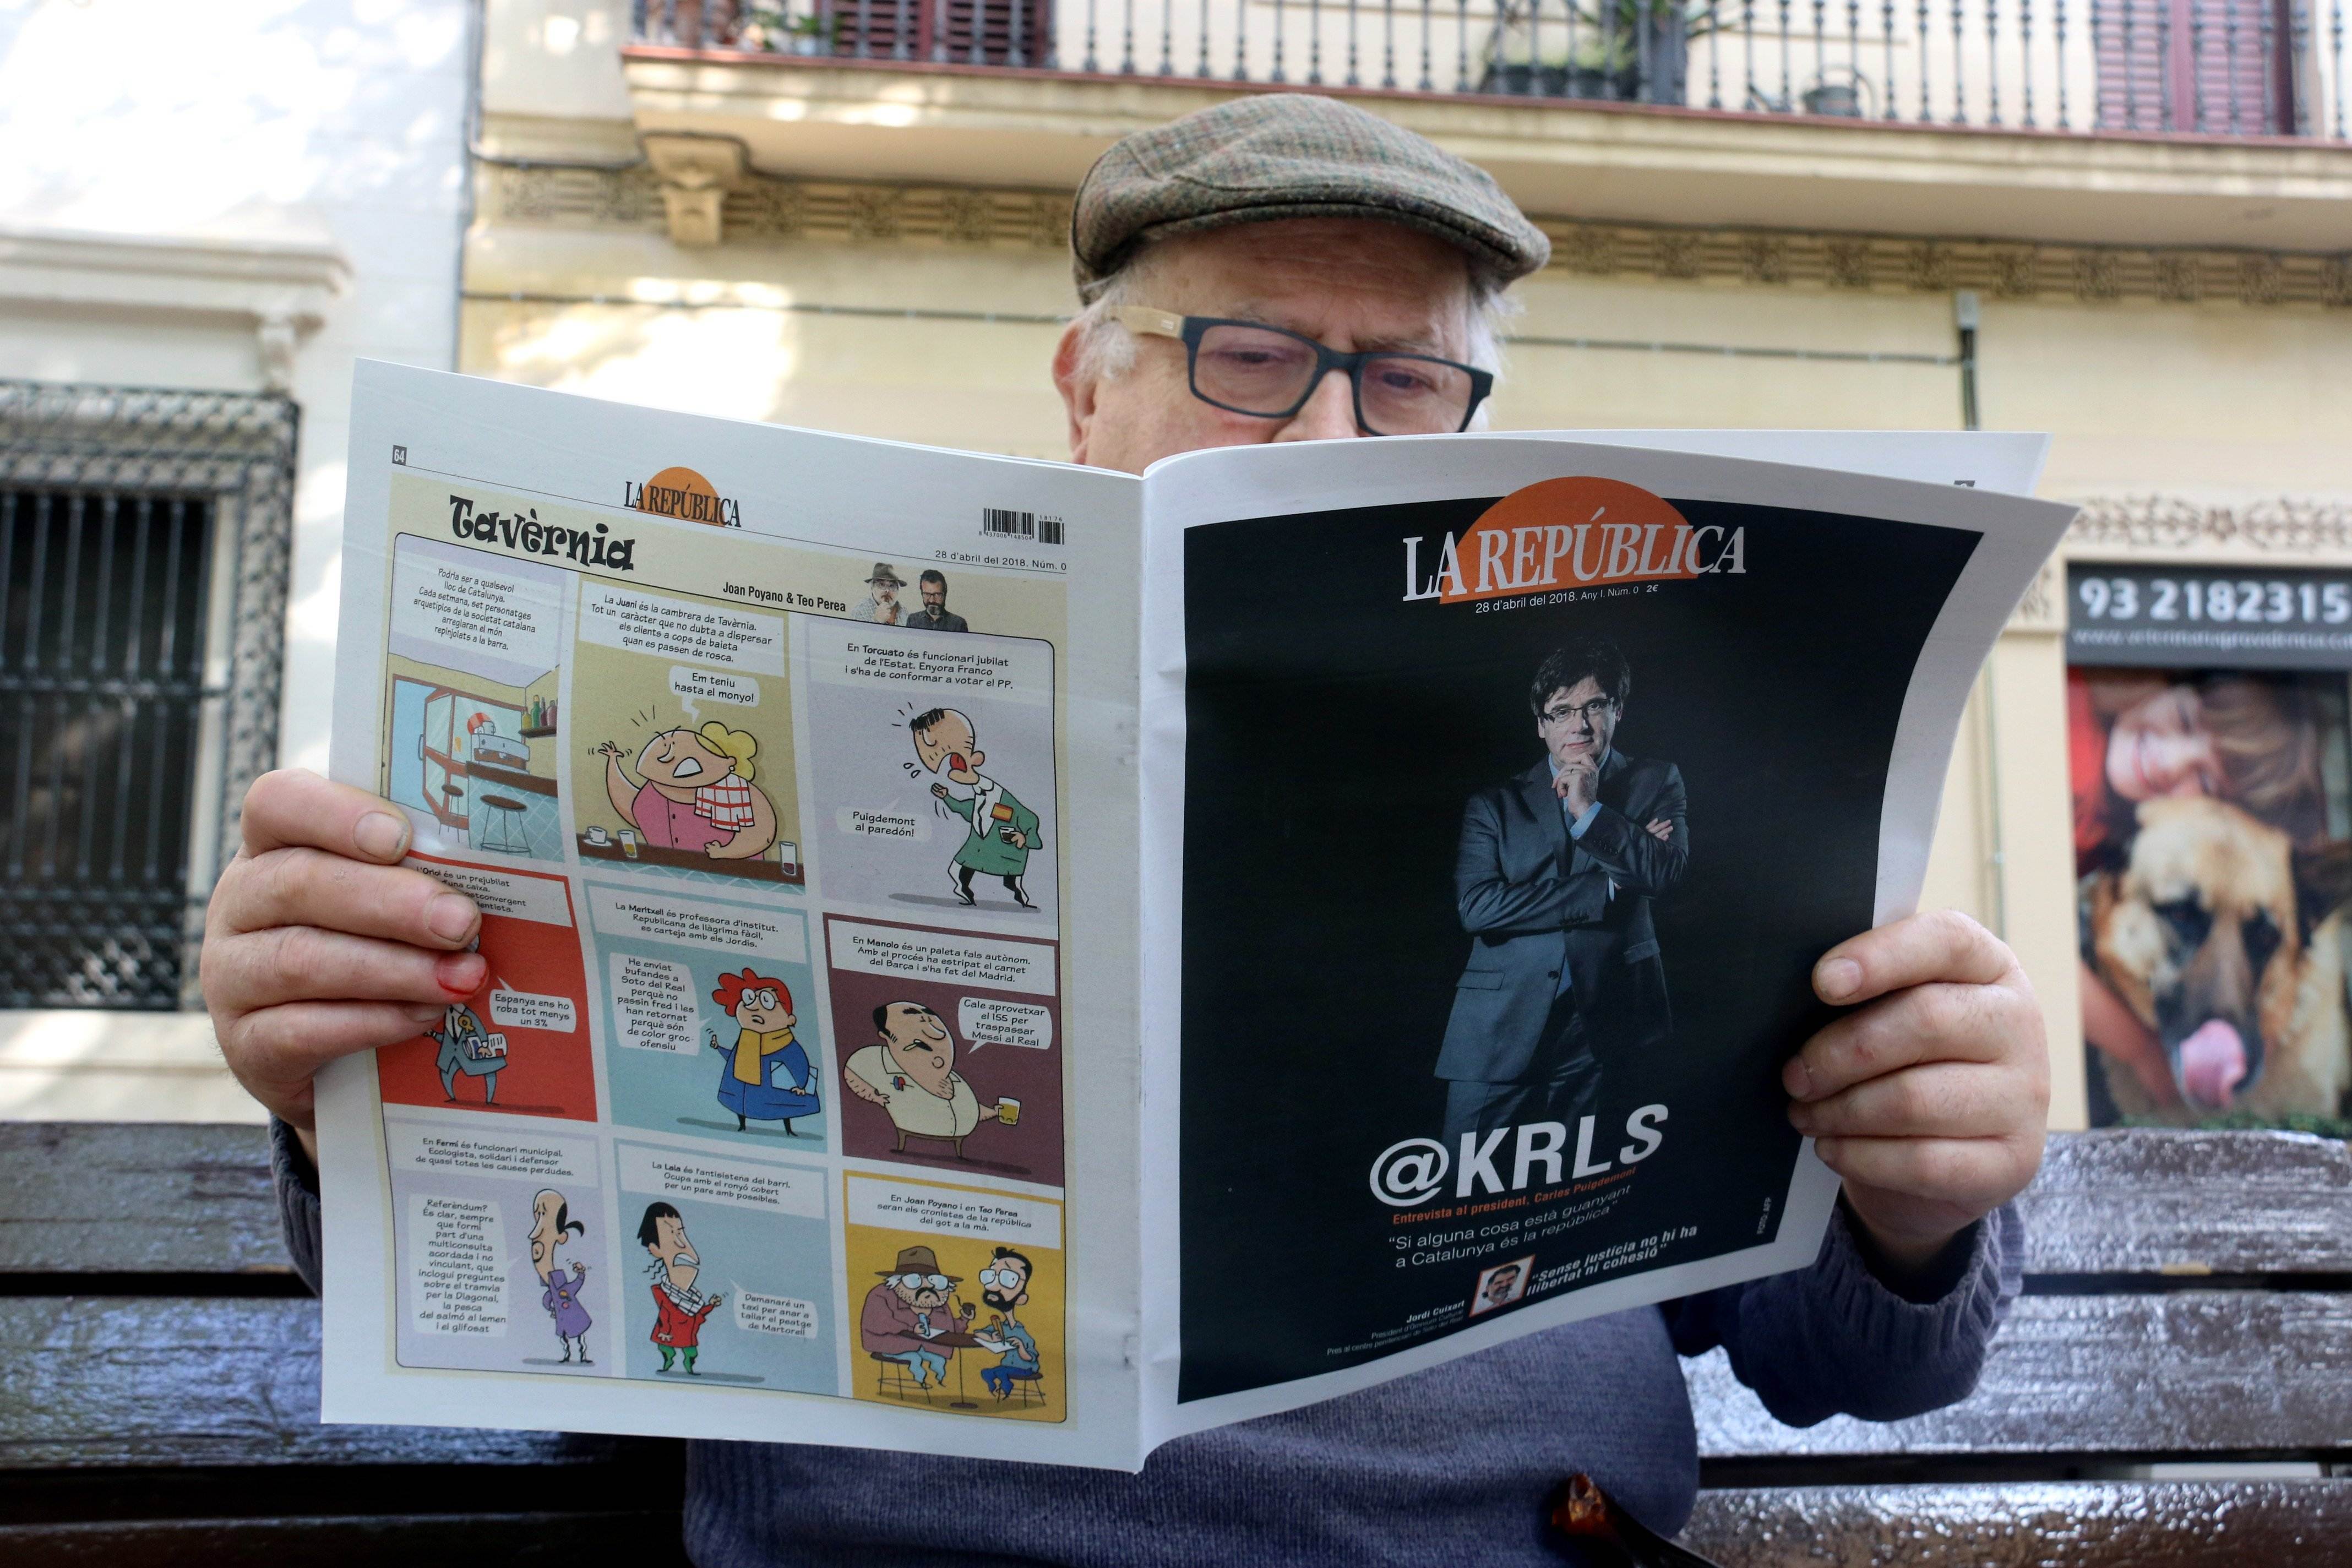 Nace el semanario 'La República' con una entrevista a Puigdemont